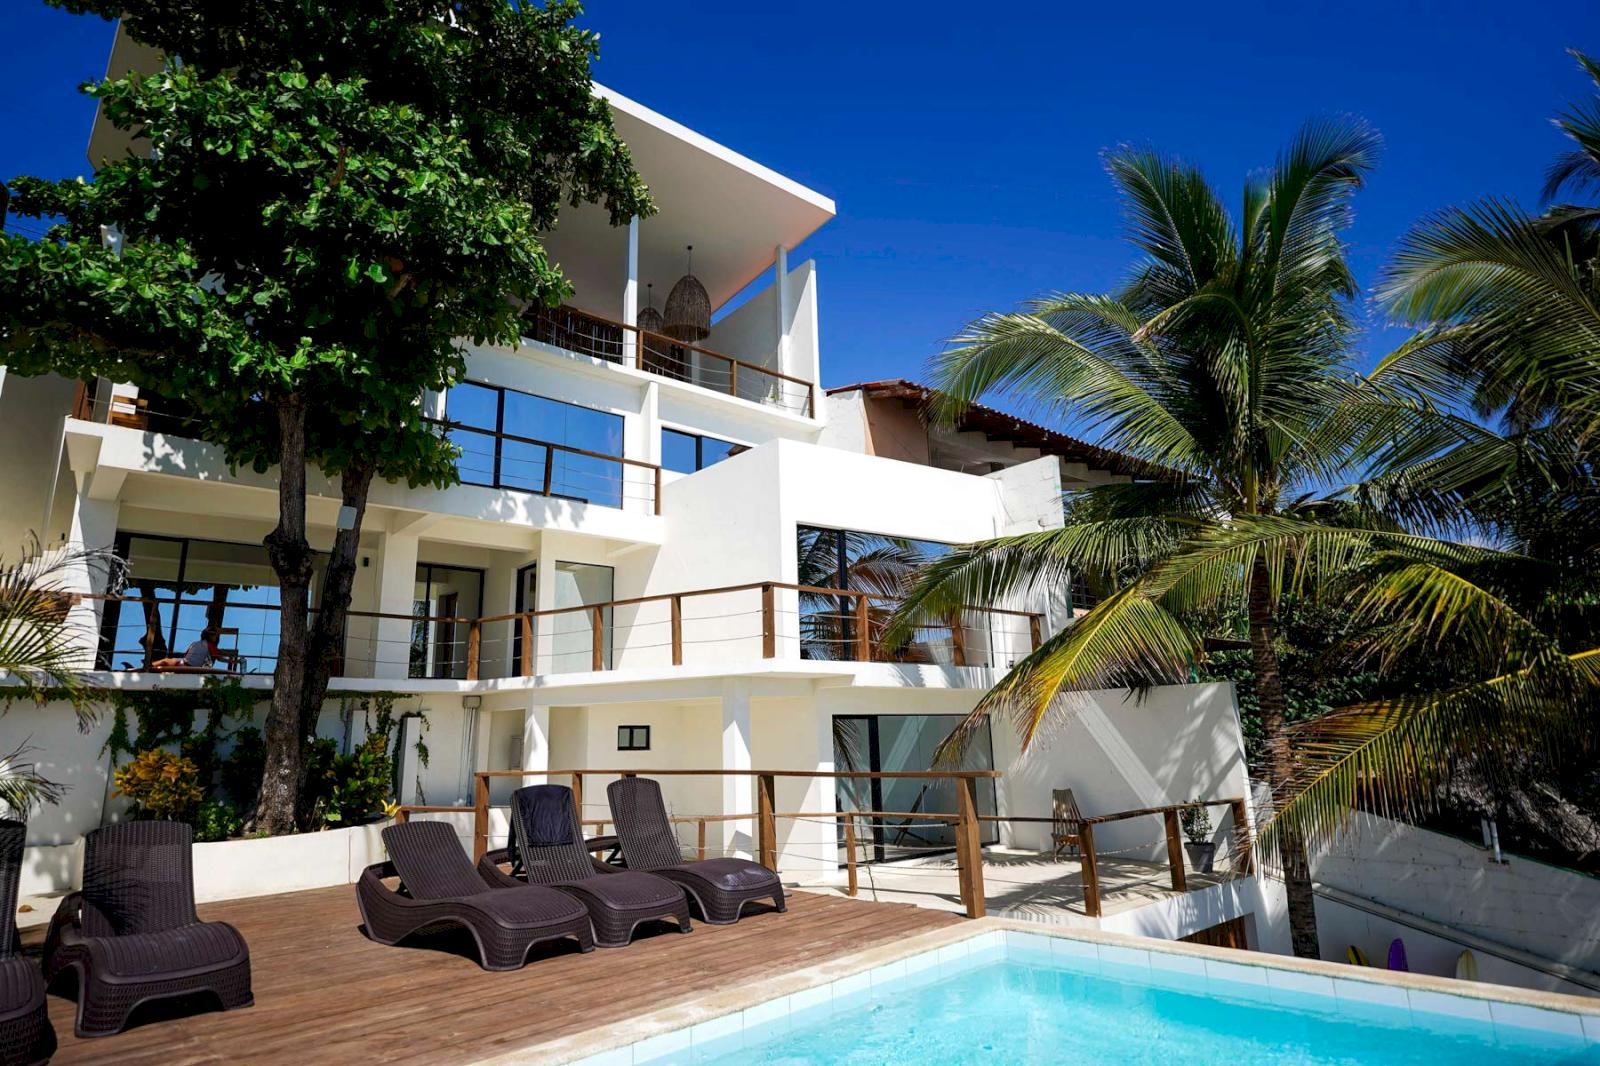 Vitt hotell med palmer och pool.